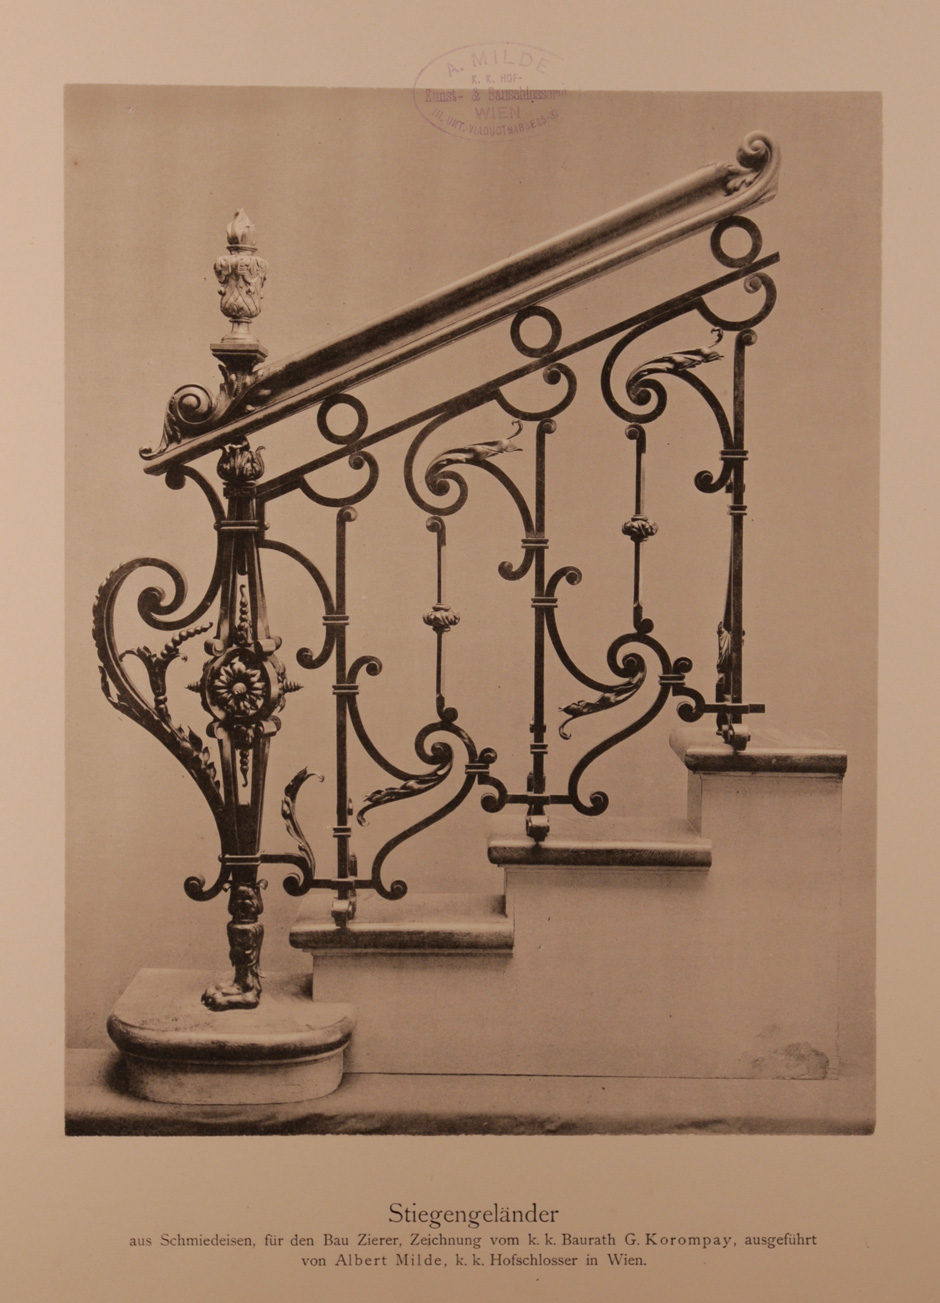 Archivbild: Palais Kranz / Palais Zierer, Schmiedeeisernes Stiegengeländer